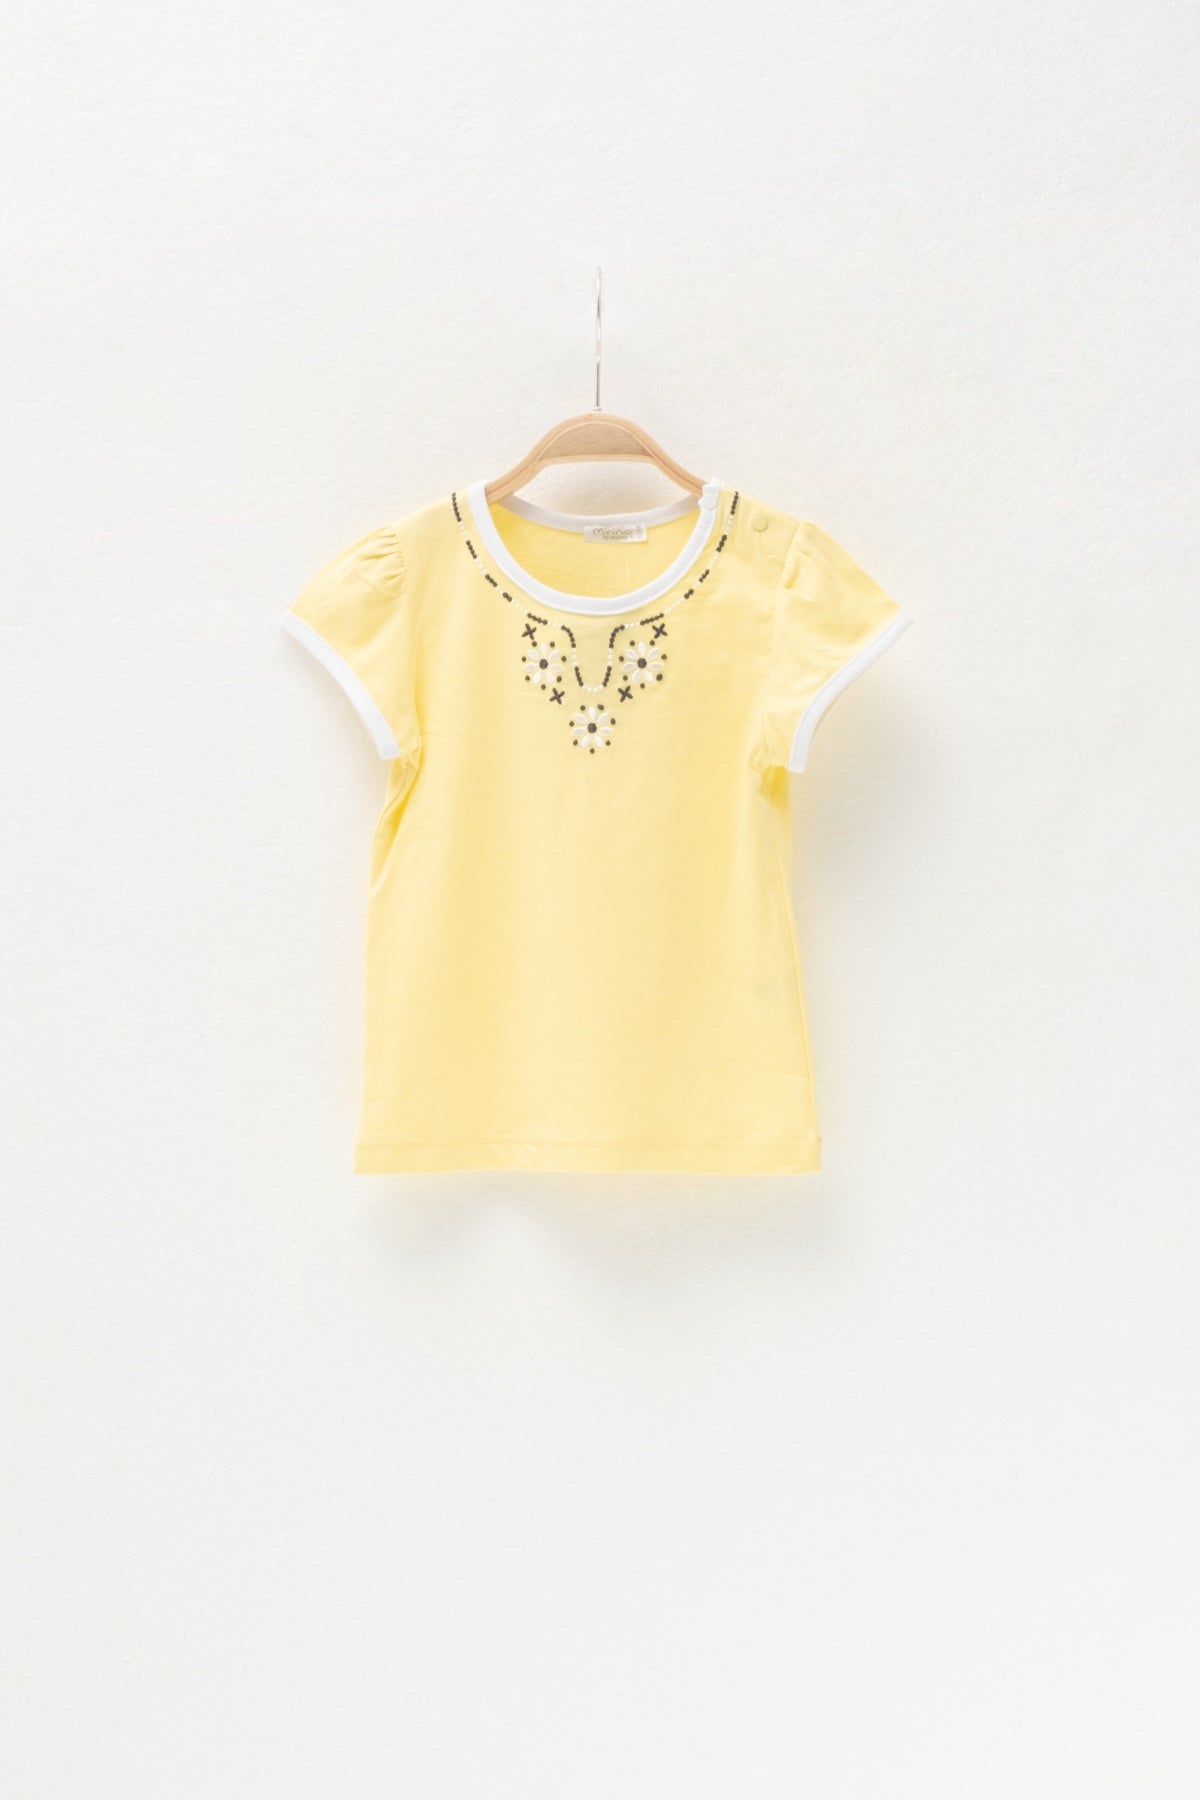 Kız Bebek Sarı Çiçek Nakışlı T-Shirt (6ay-4yaş)-0